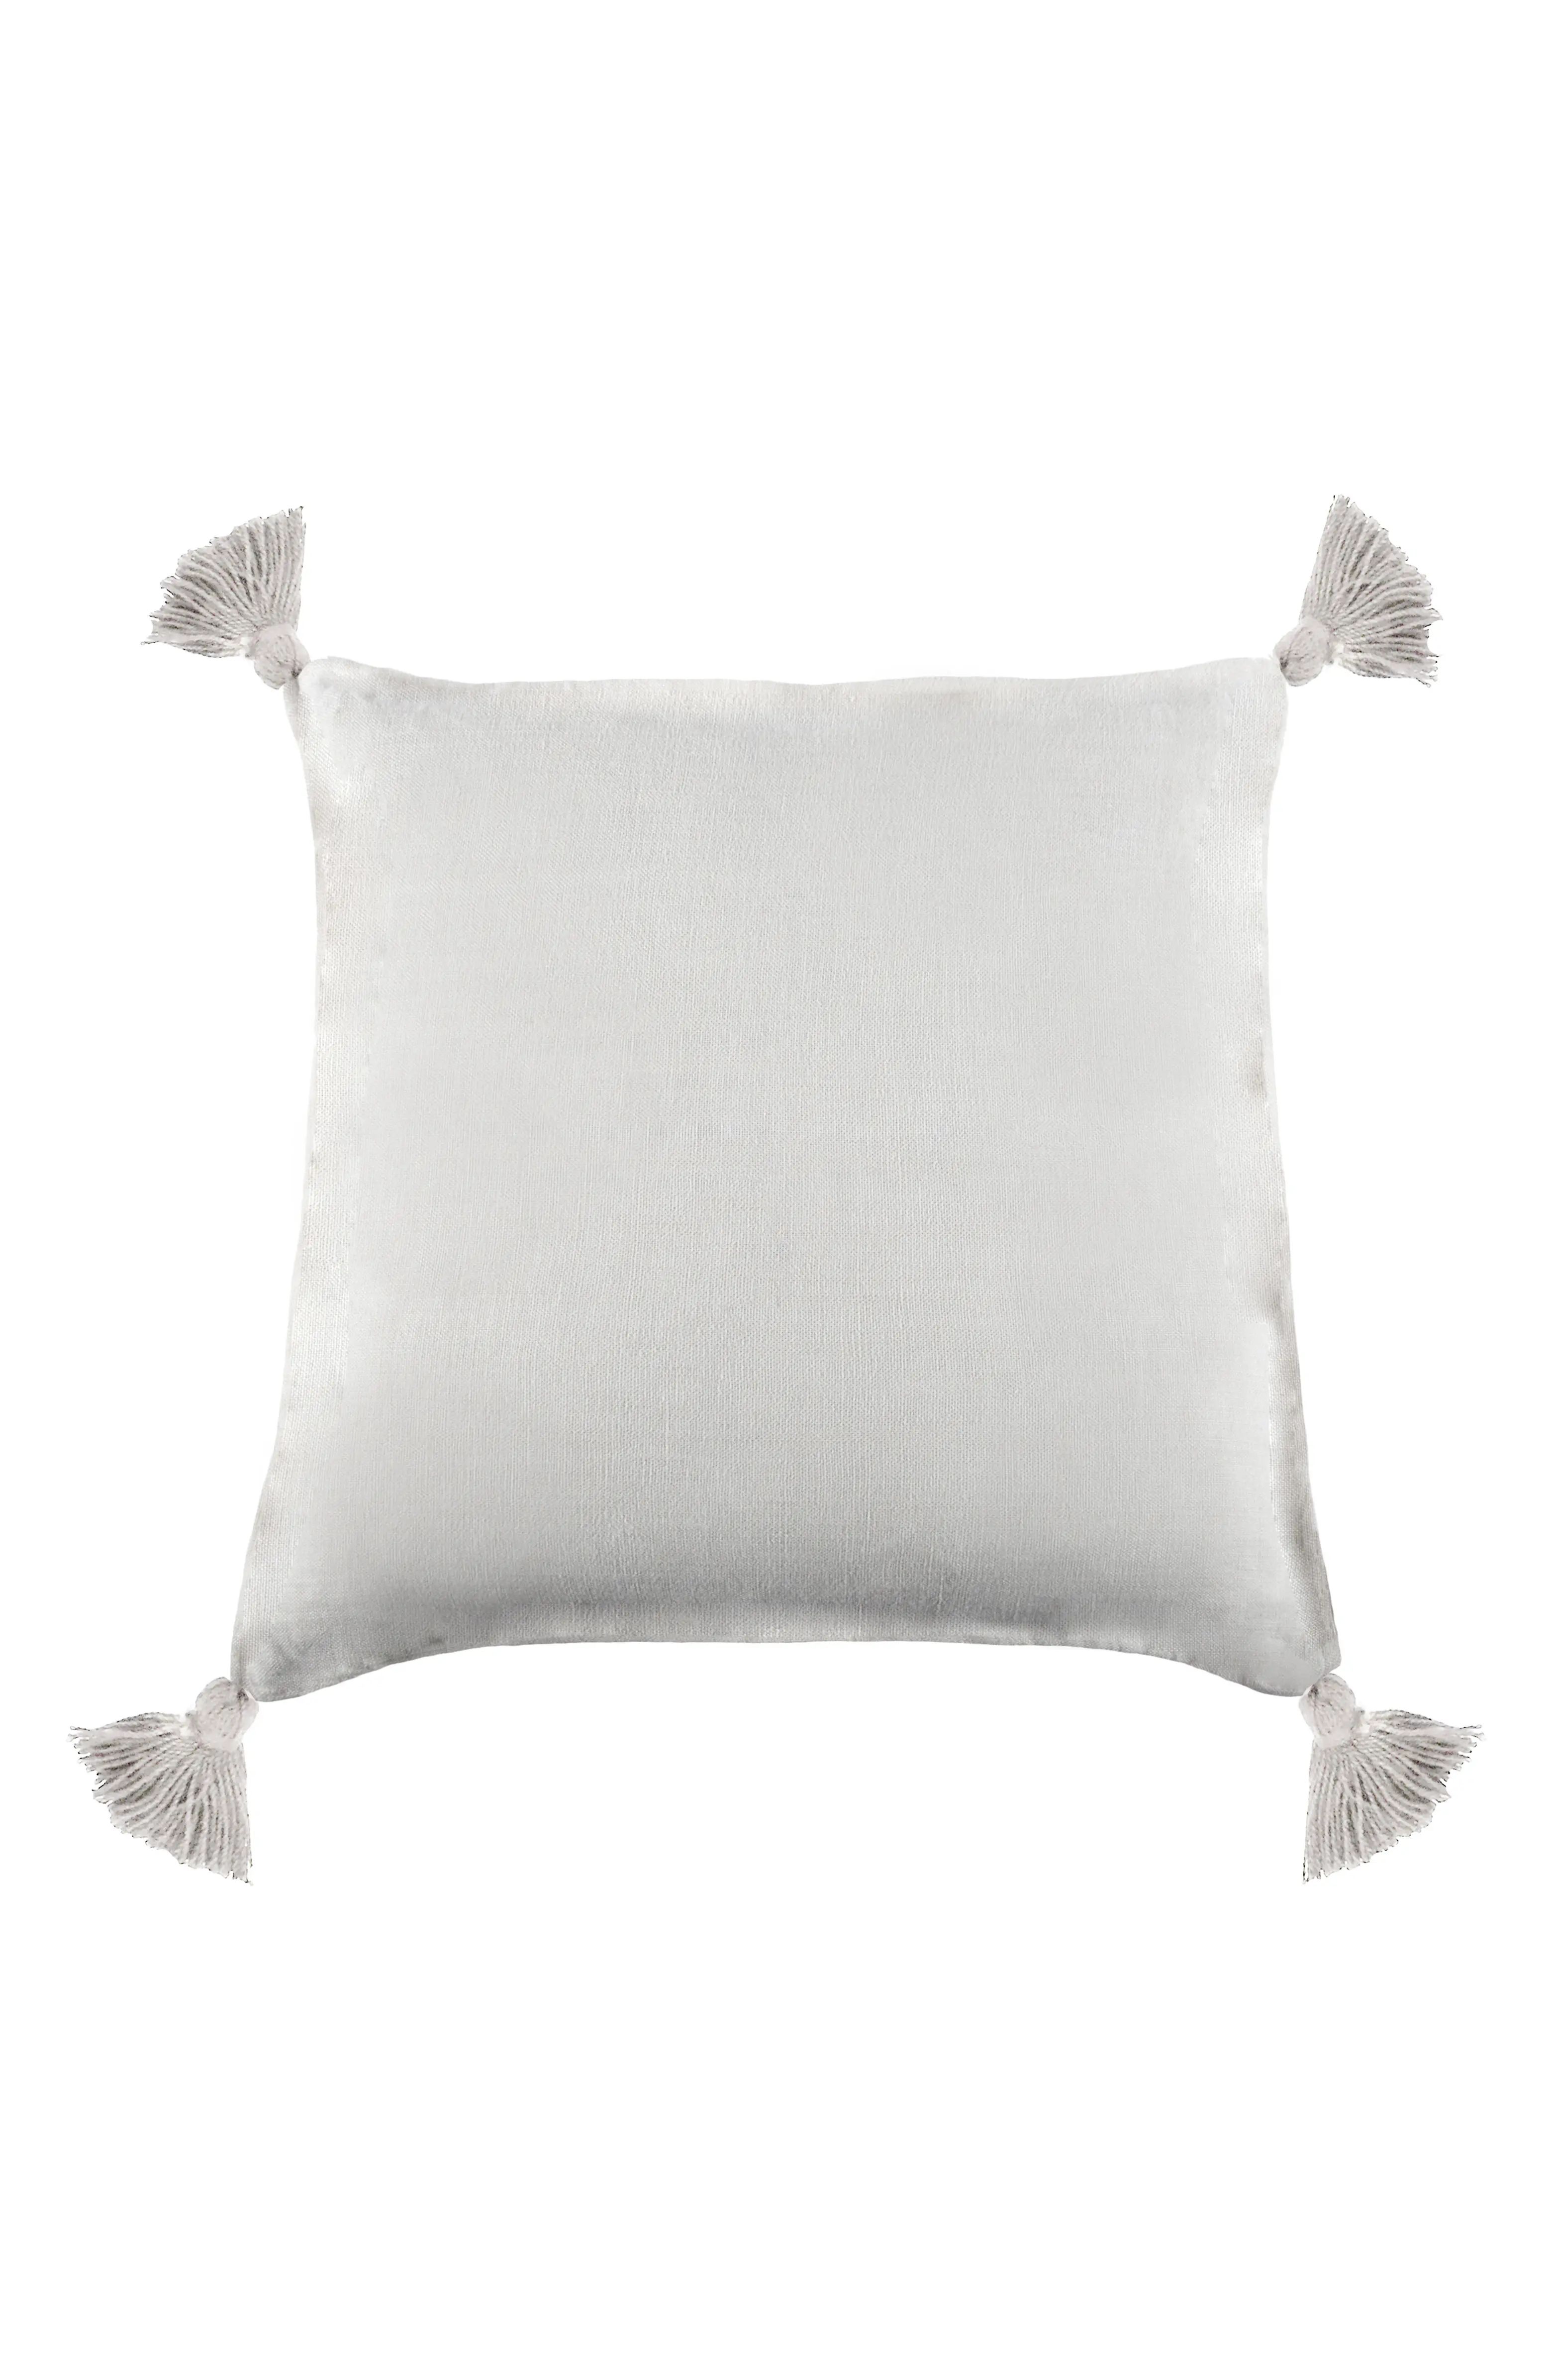 Montauk Tassel Accent Pillow | Nordstrom